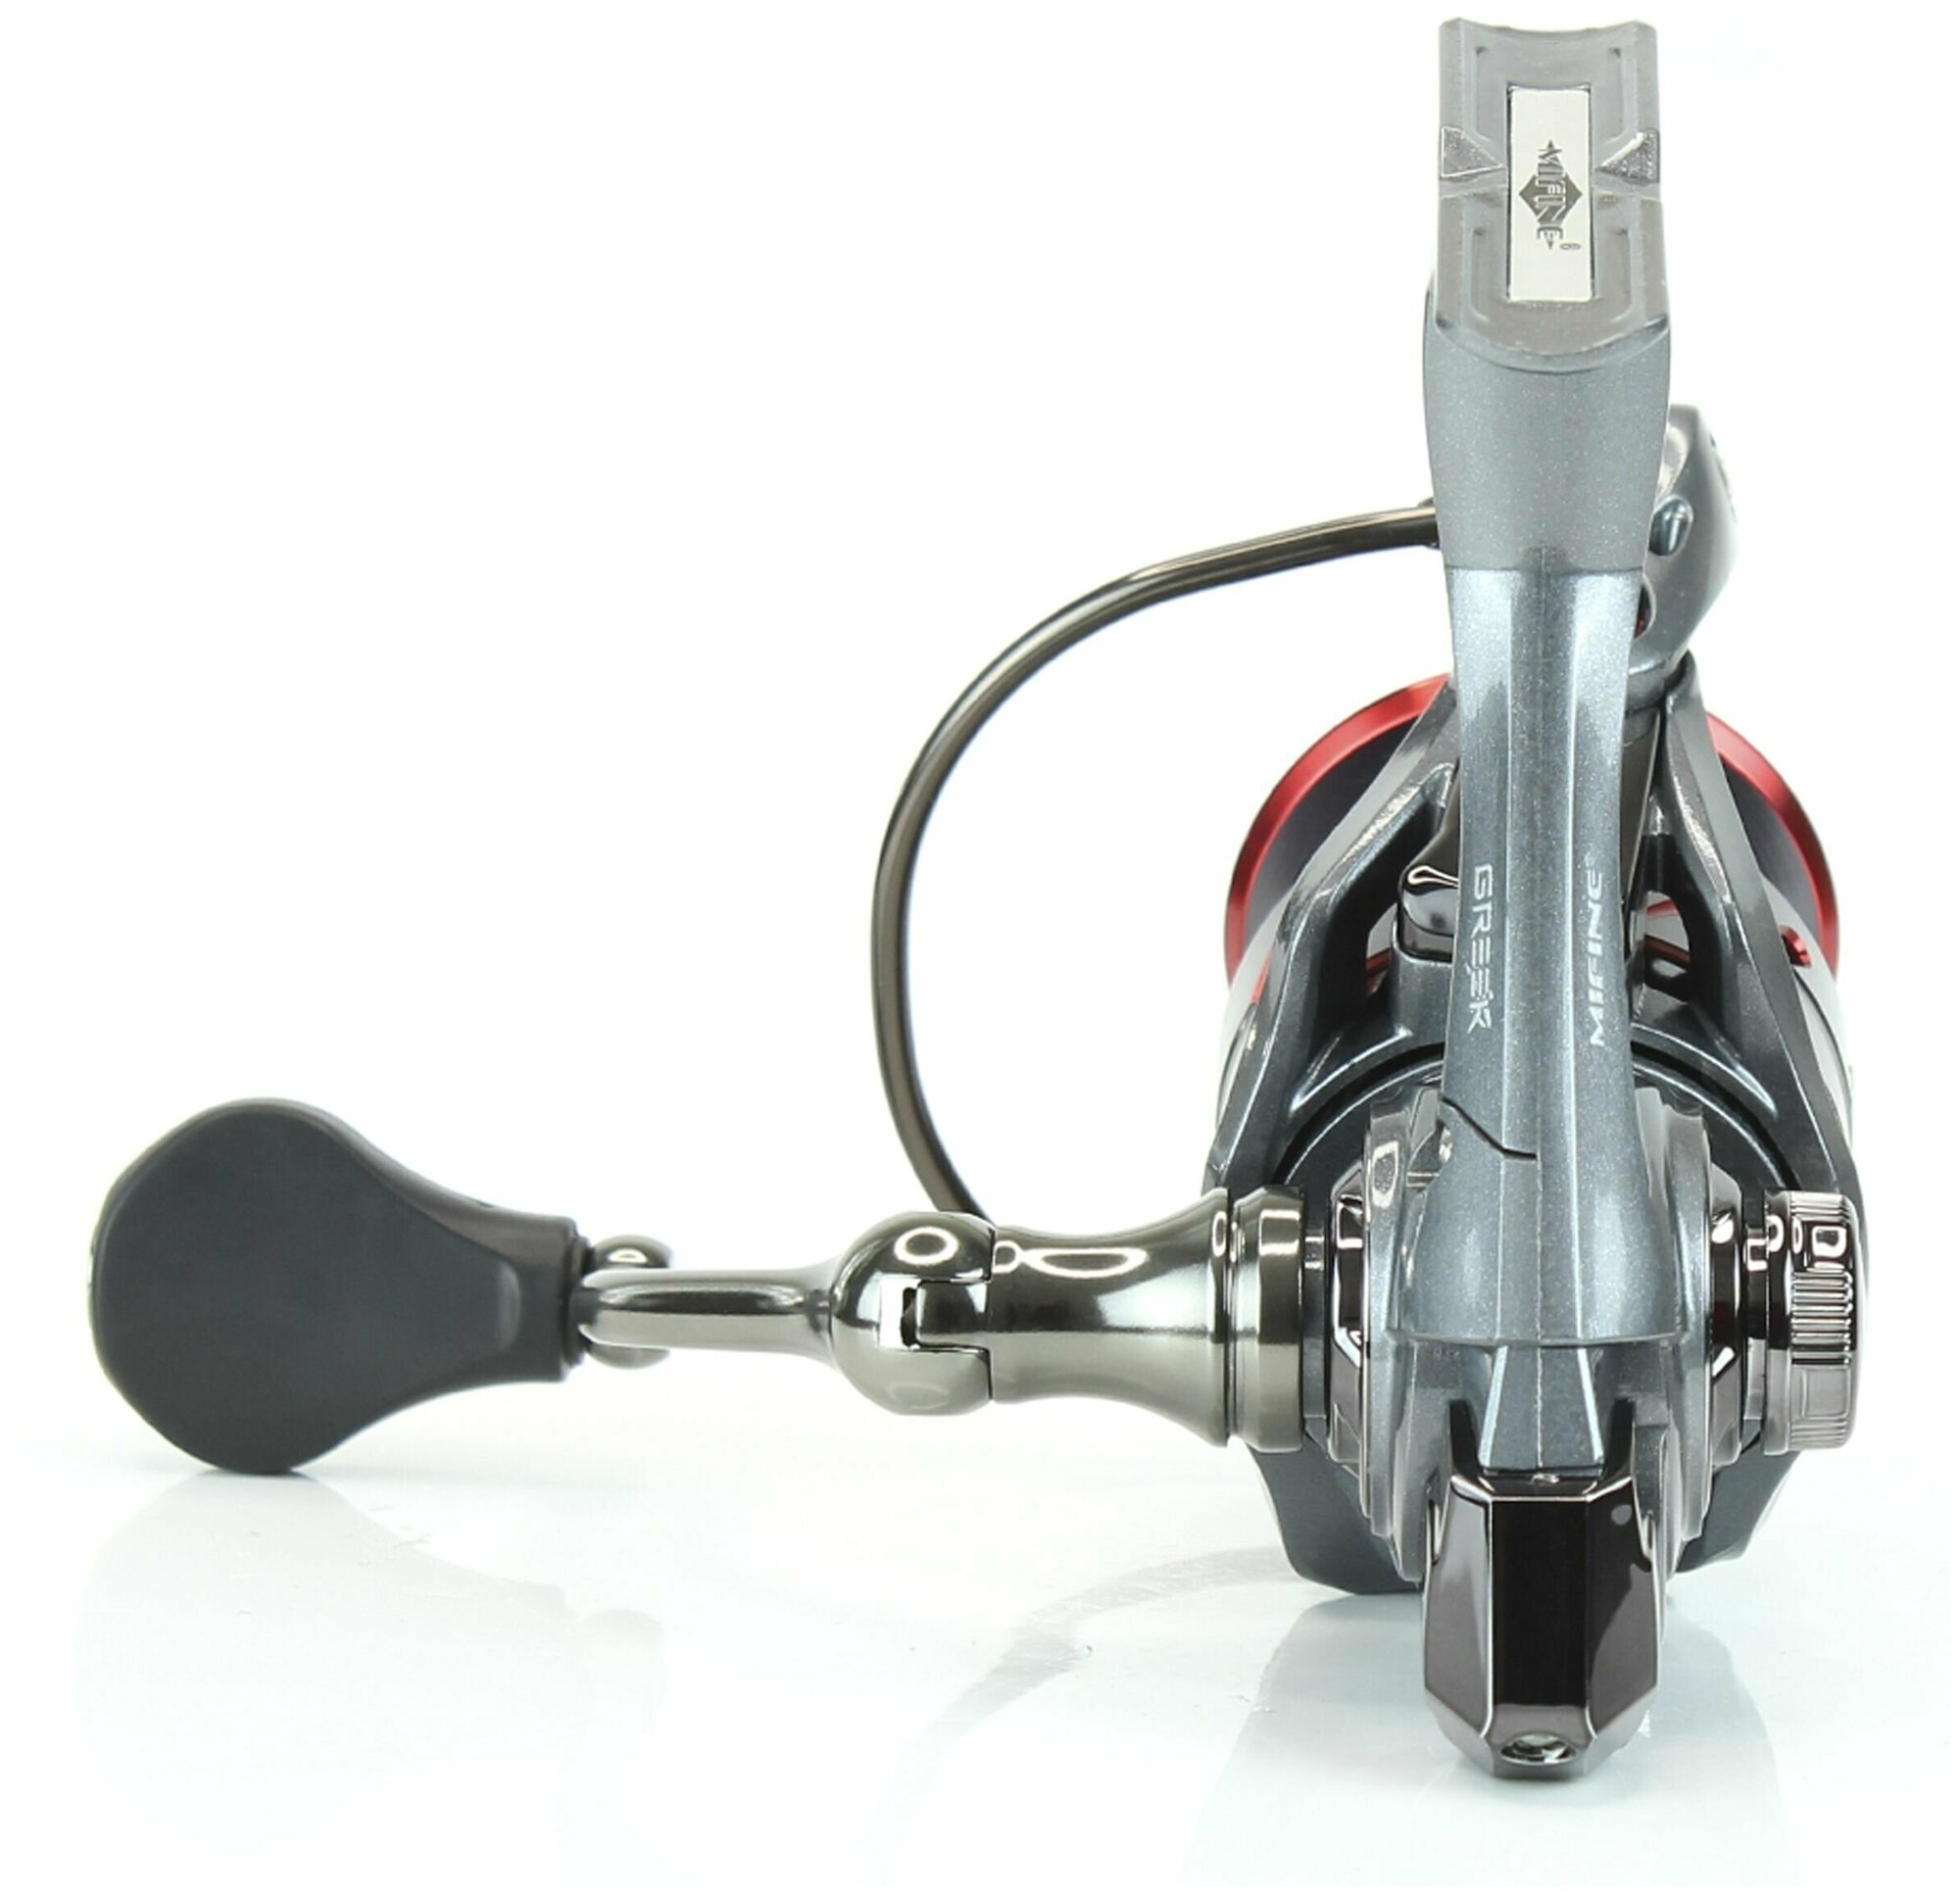 Катушка рыболовная MIFINE GREEK X 4000F 6+1 подшипник  для спиннинга для фидера с металлической шпулей